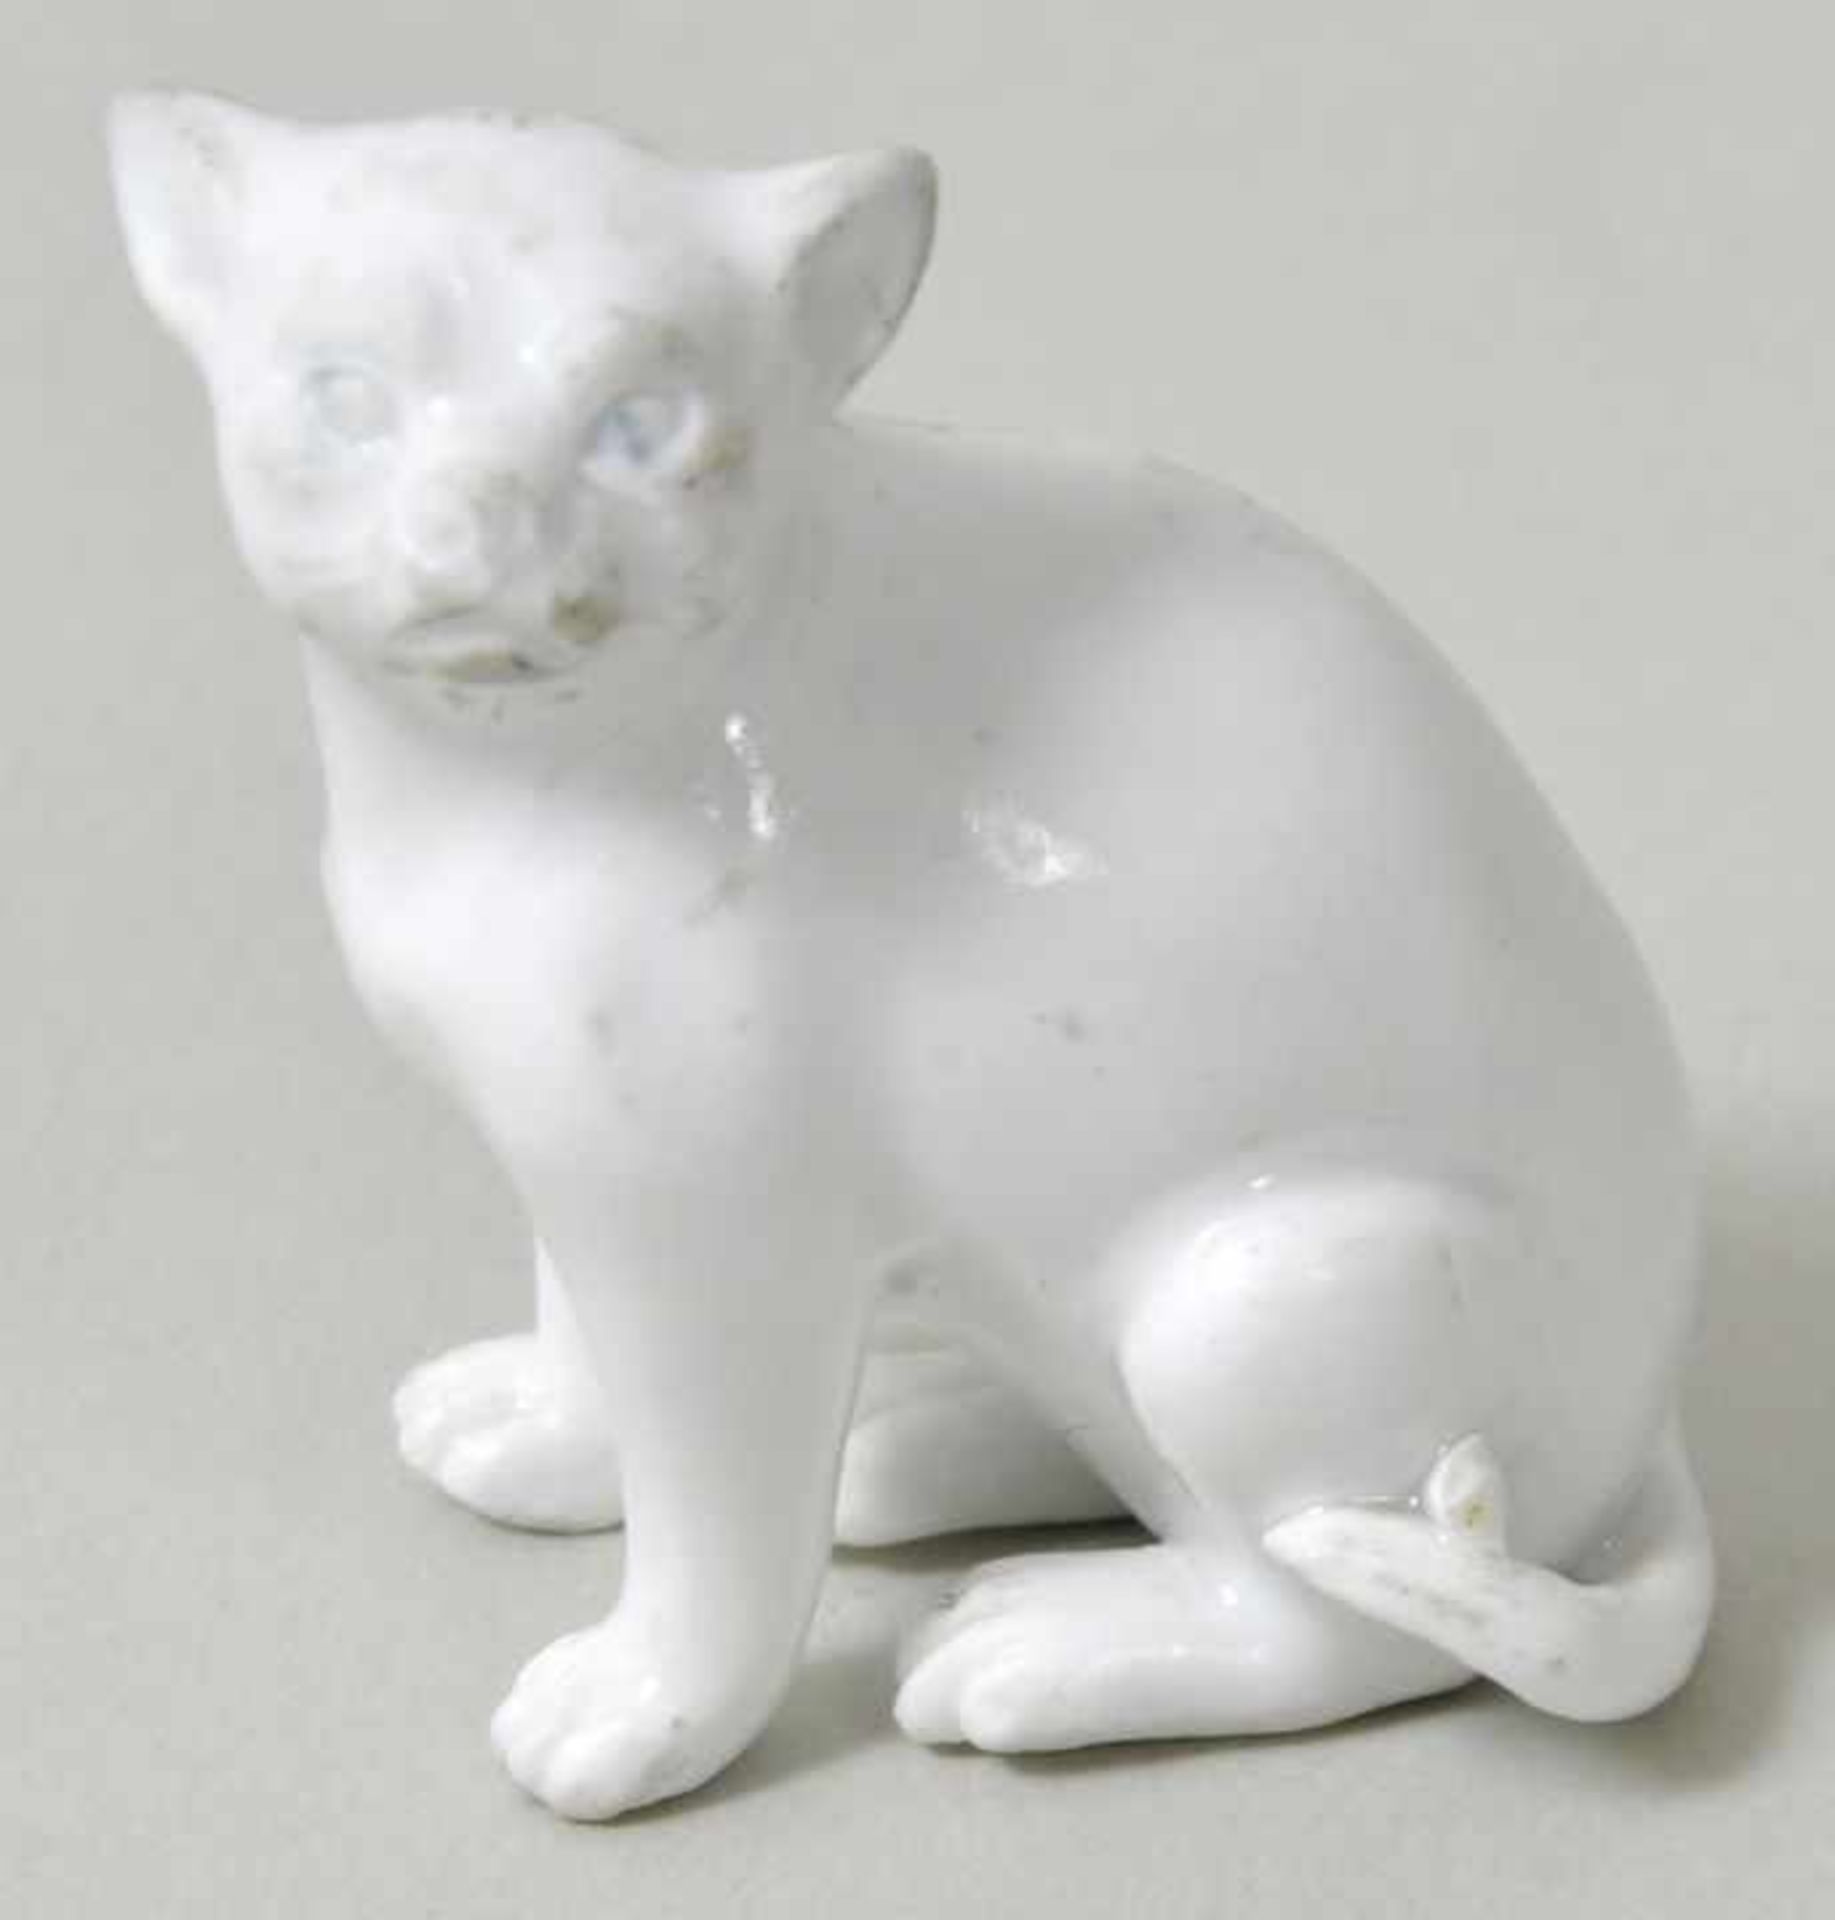 Tierminiatur kleine Katze, Meissen, 18. Jh. Porzellan, weiß. Unbekannter Modelleur.